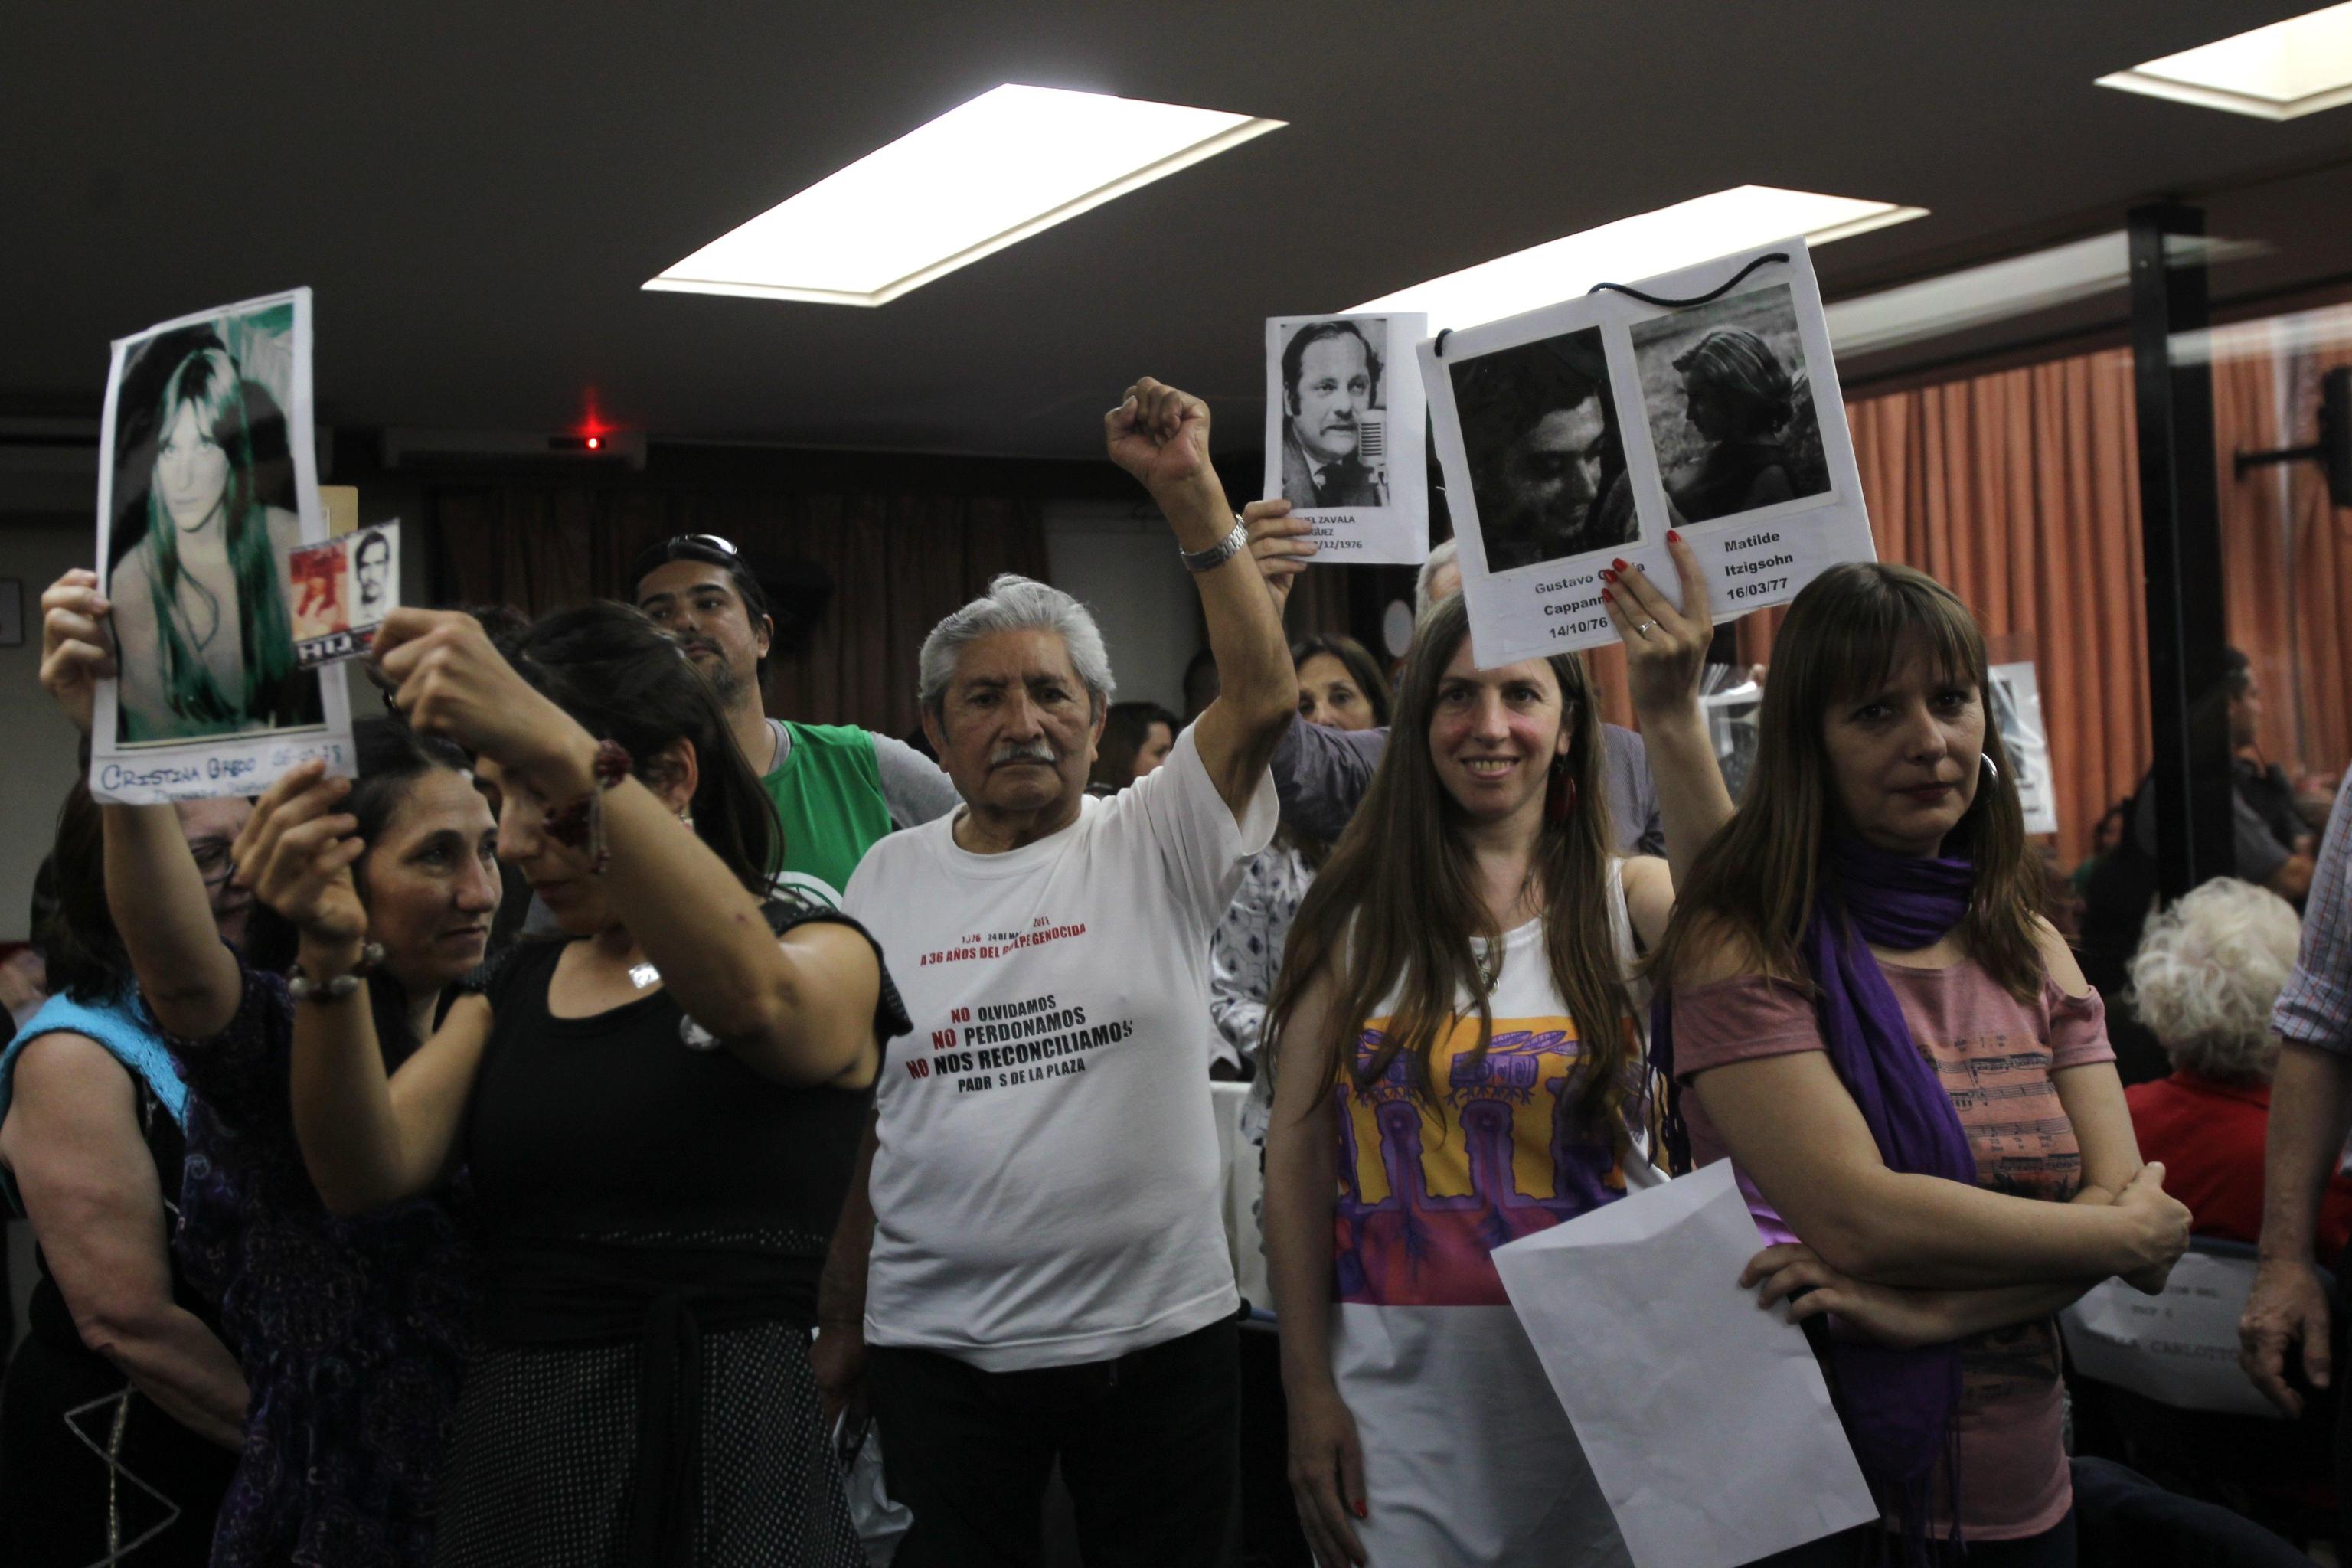 La reazione delle famiglie delle vittime durante la sentenza emanata dai tribunali federali della capitale argentina